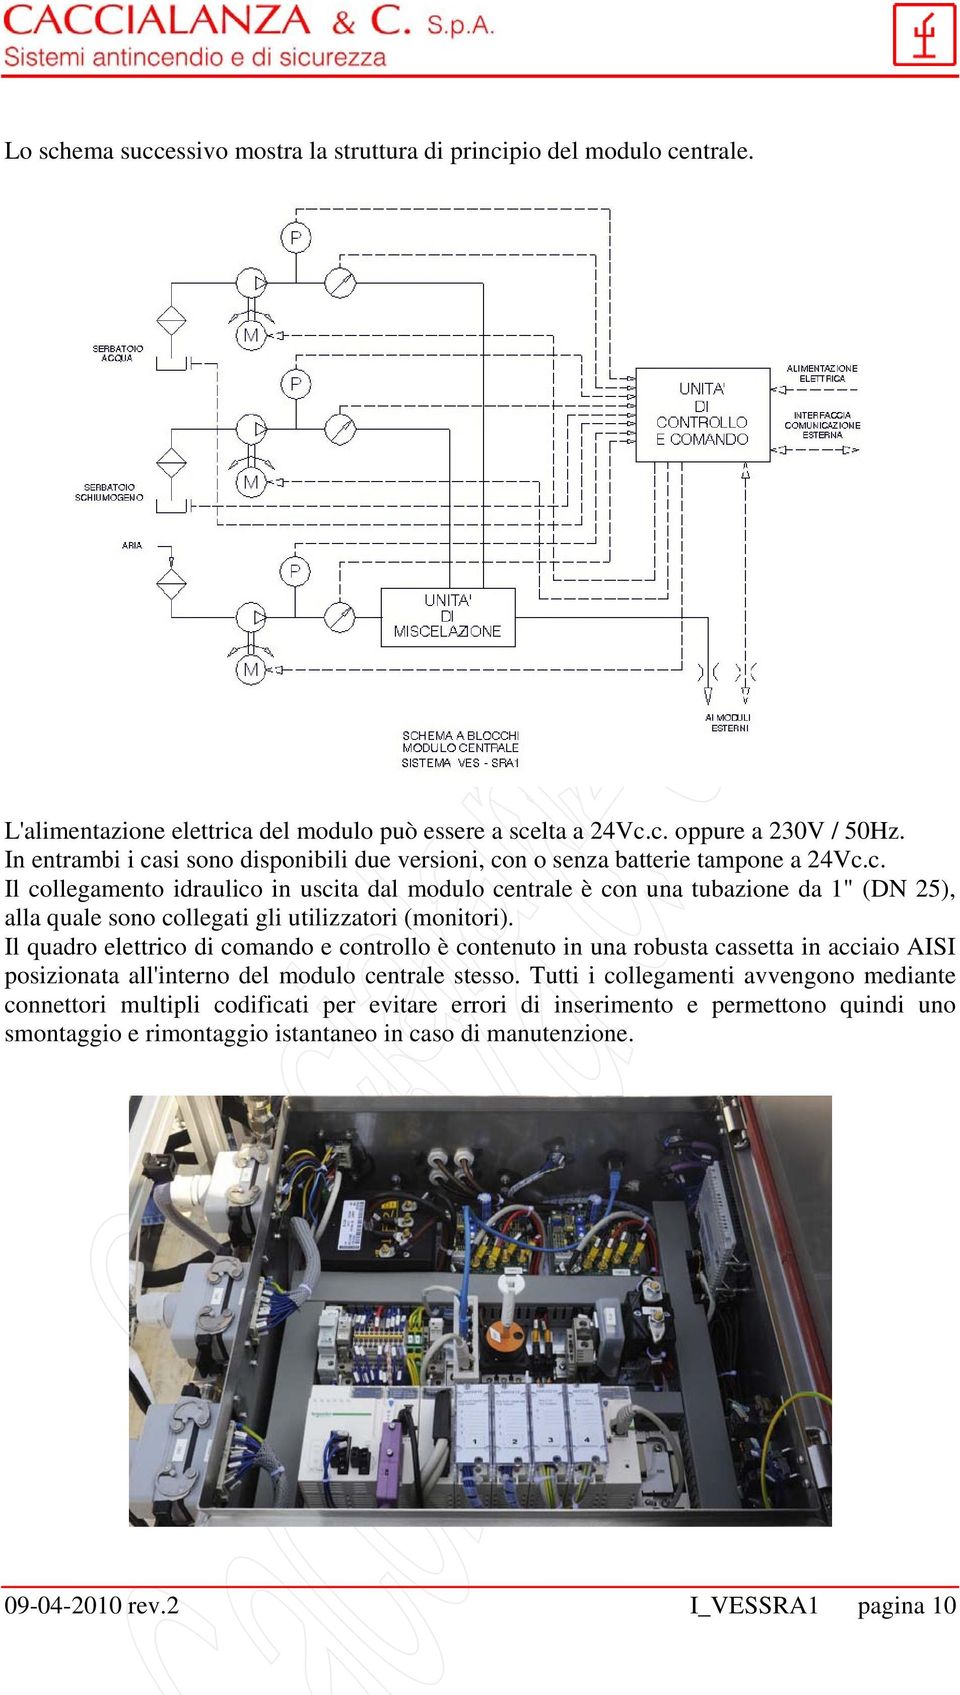 Il quadro elettrico di comando e controllo è contenuto in una robusta cassetta in acciaio AISI posizionata all'interno del modulo centrale stesso.